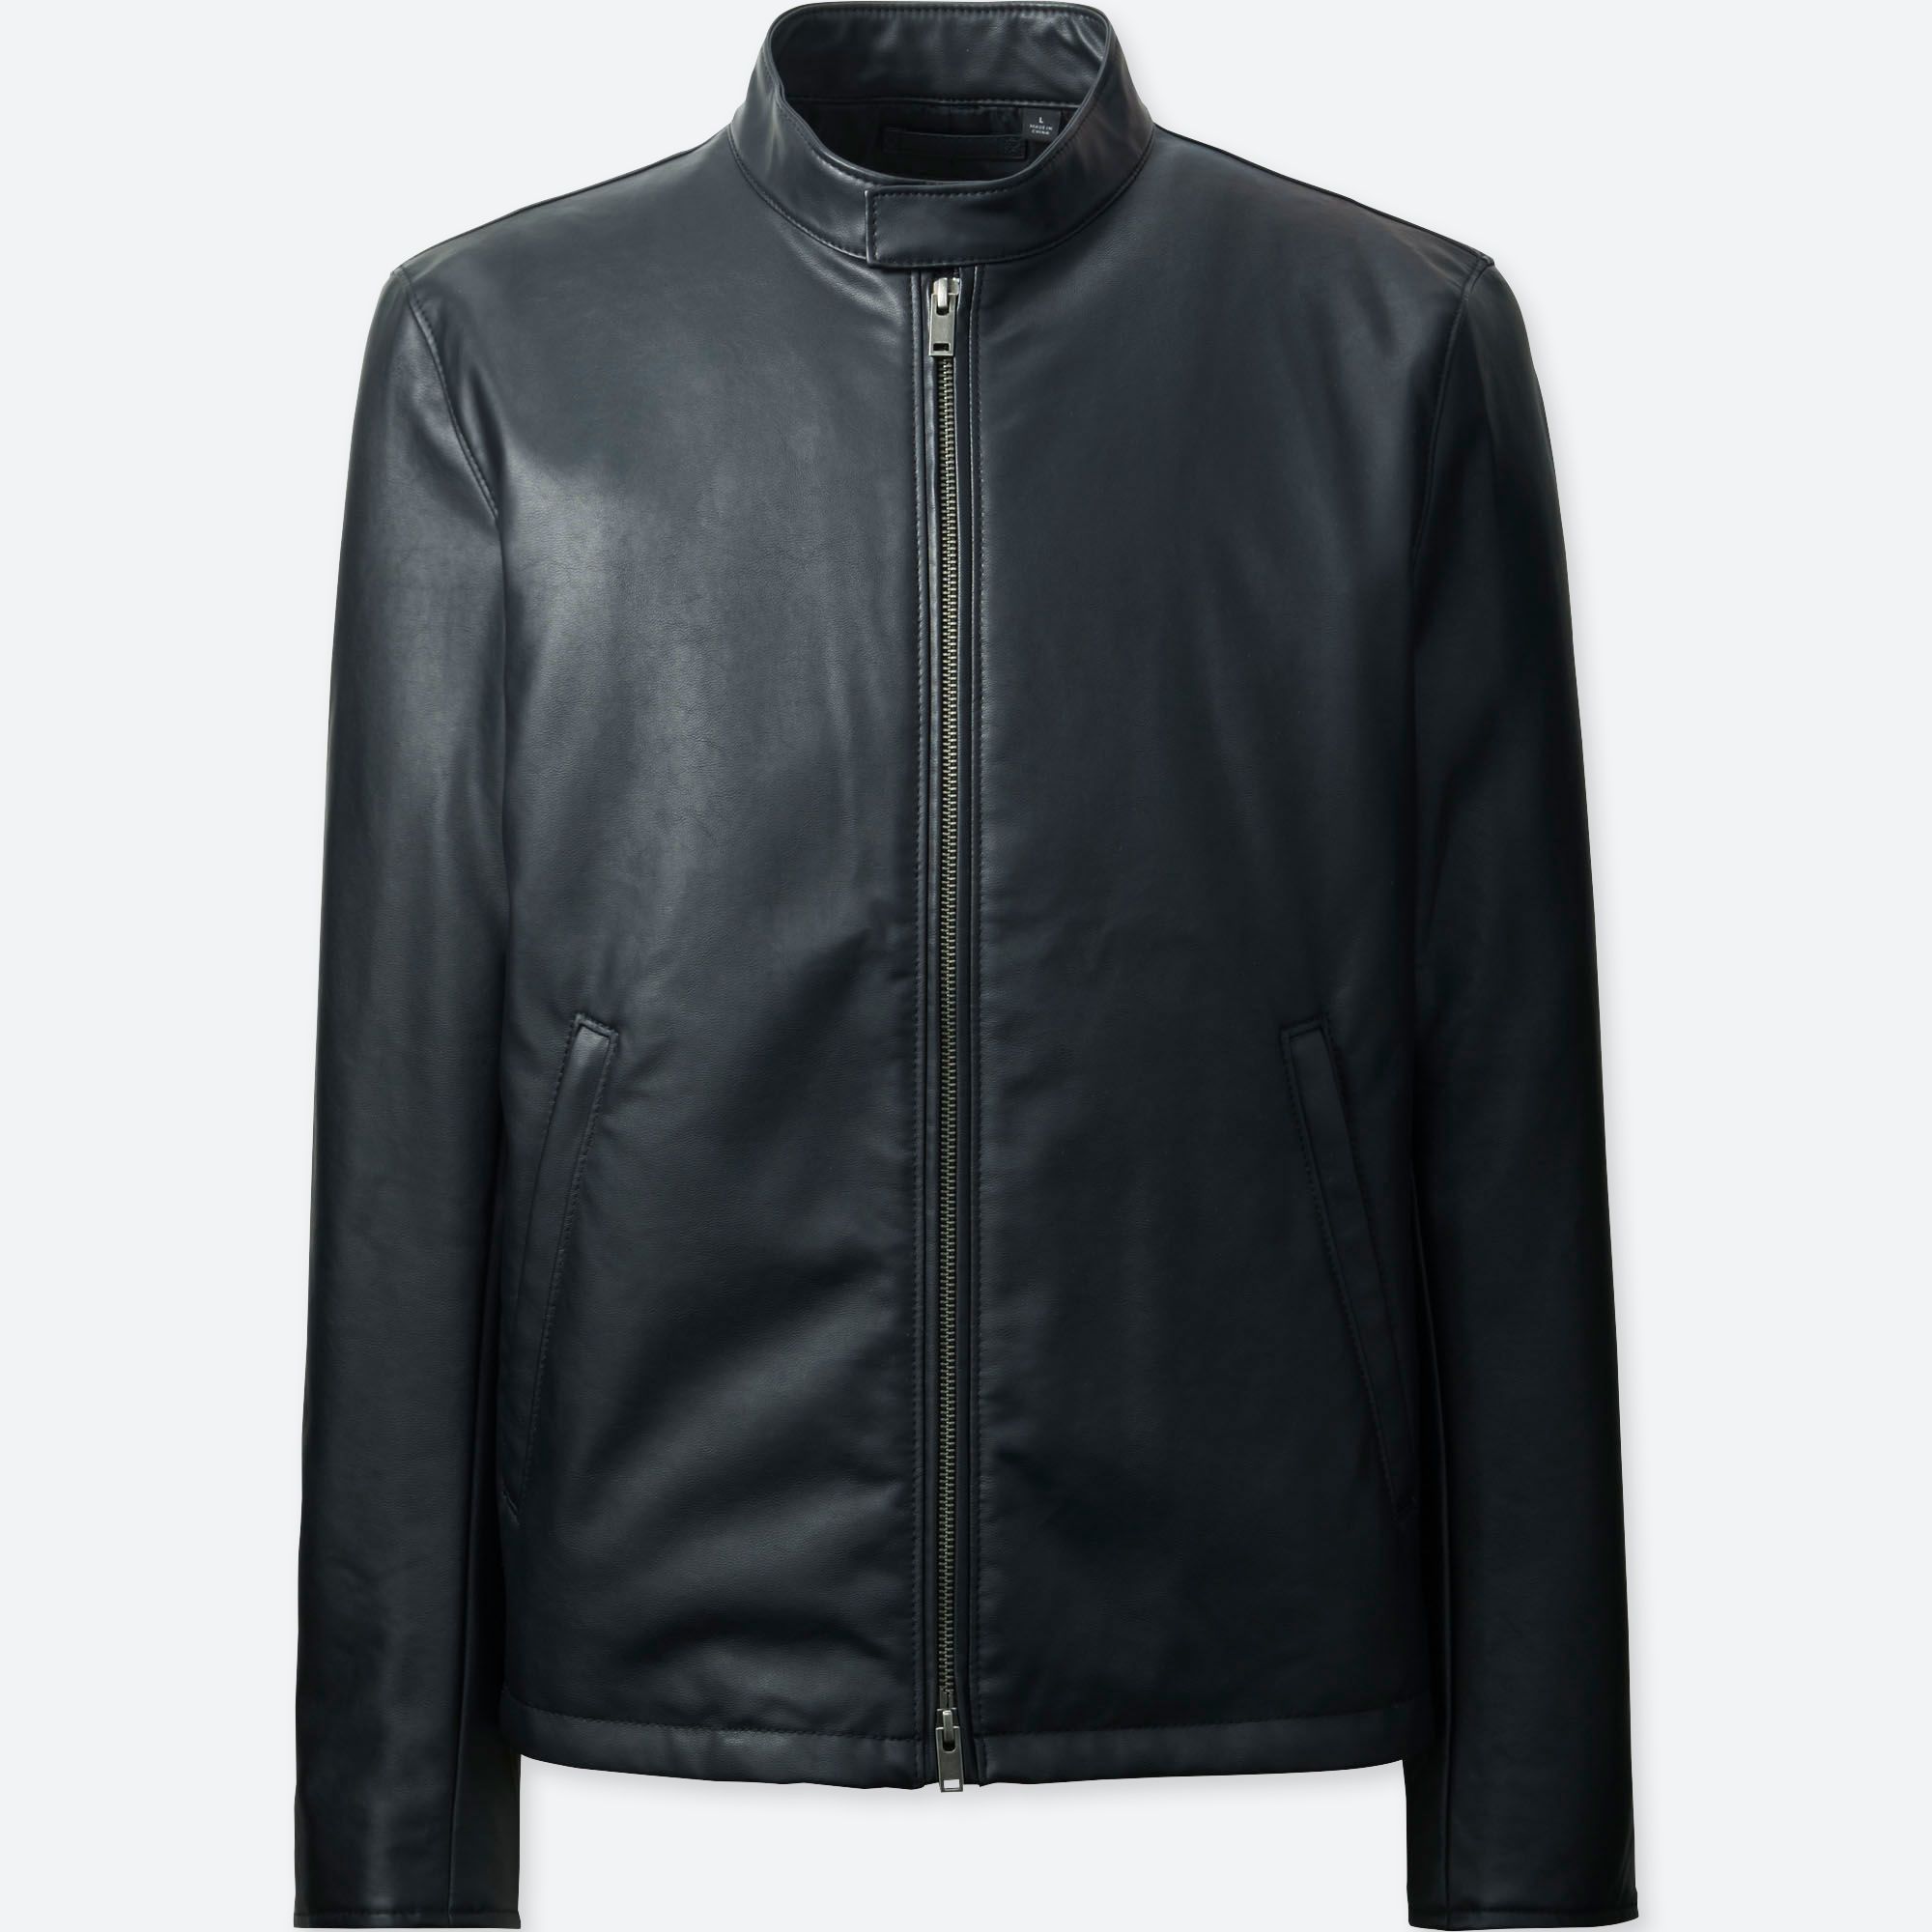 Faux leather jacket uniqlo